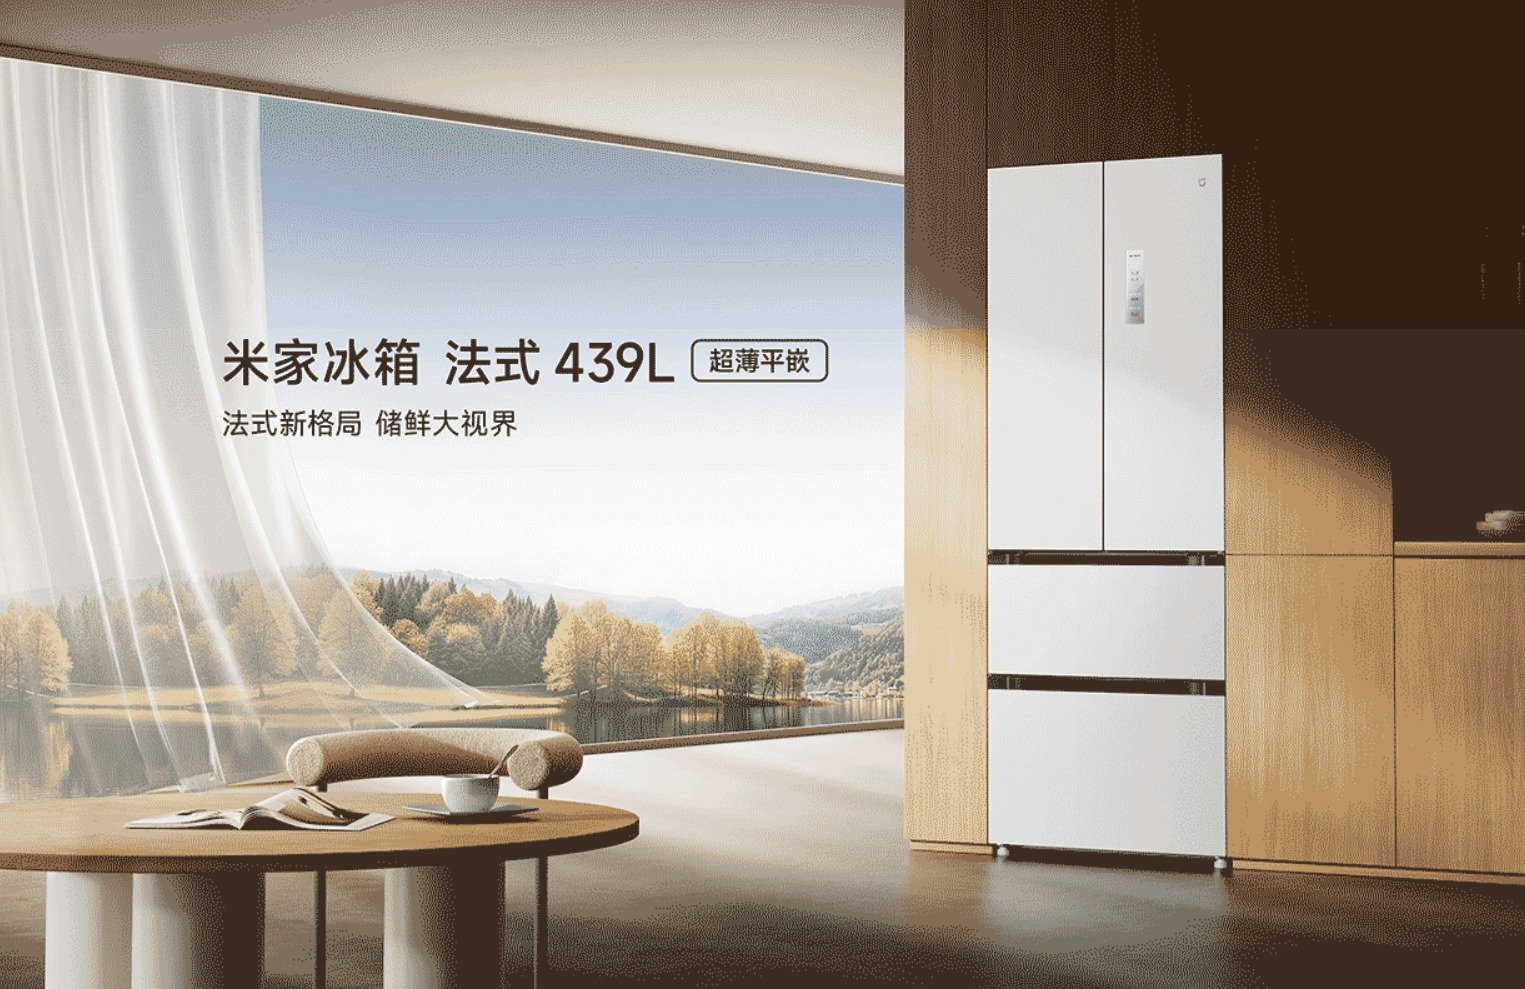 Tủ lạnh kiểu Pháp Xiaomi Mijia 439L ra mắt tại Trung Quốc